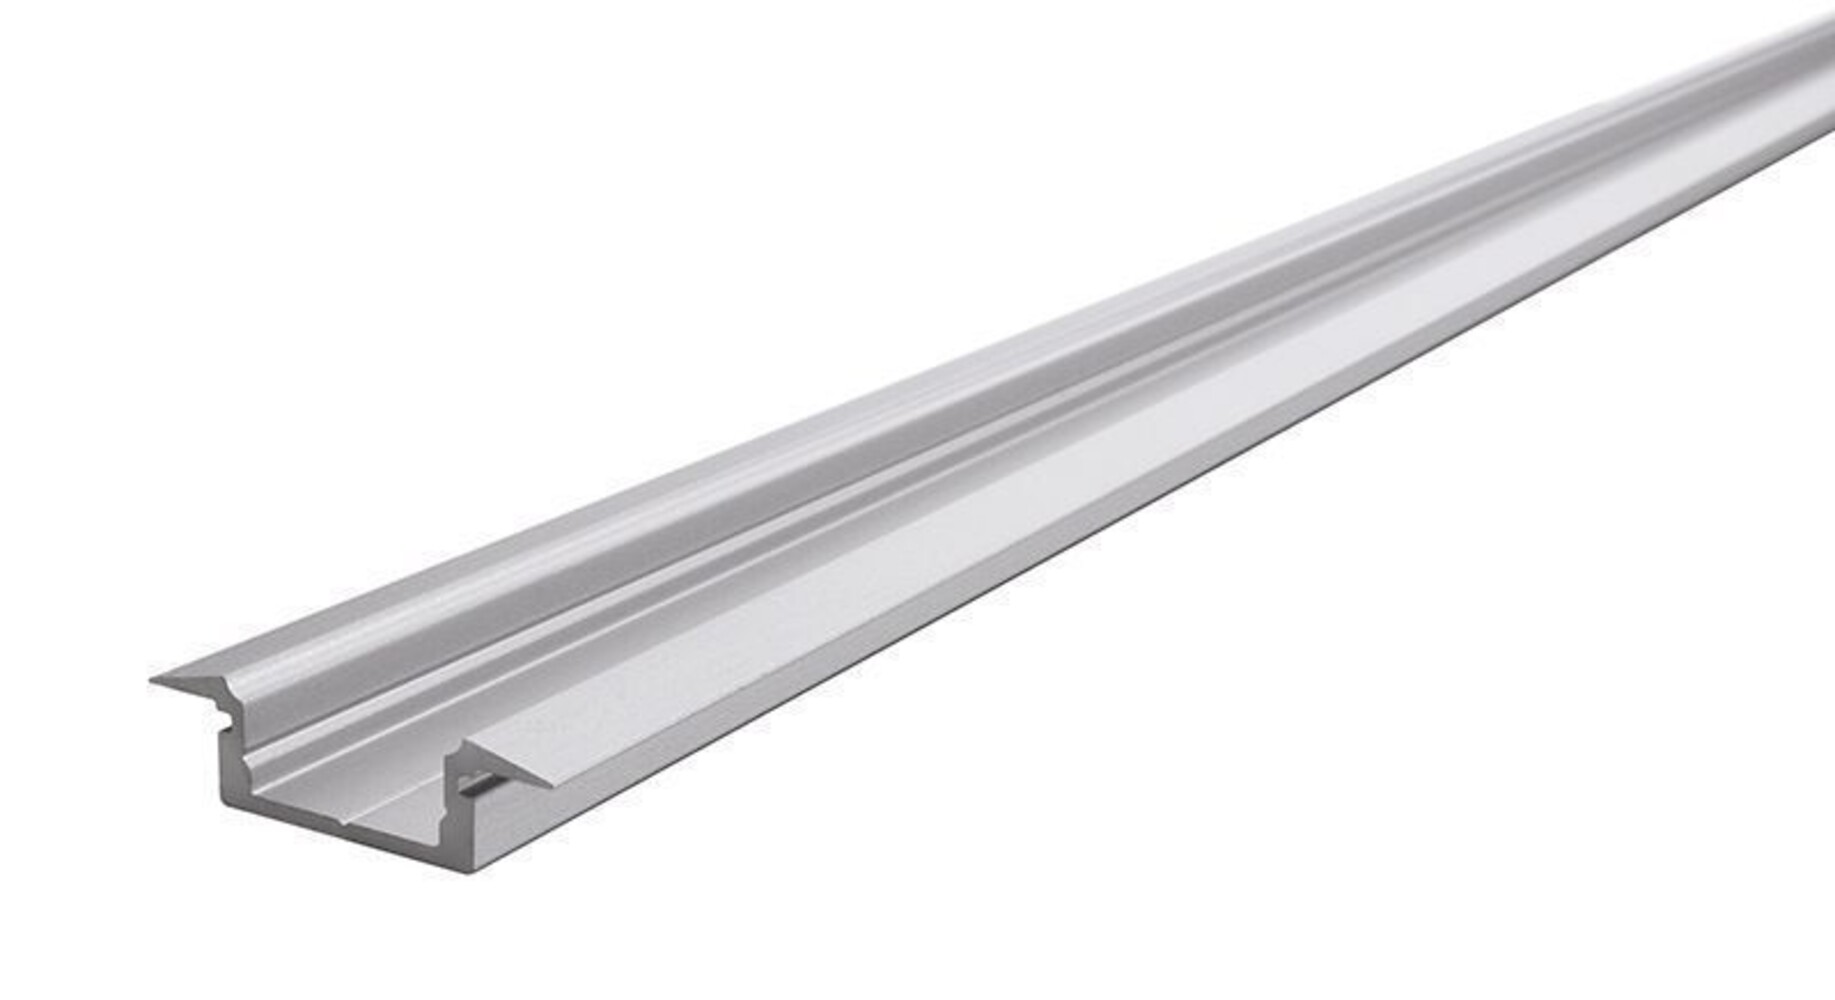 Silber mattes, naturbelassenes LED Profil von der Marke Deko-Light